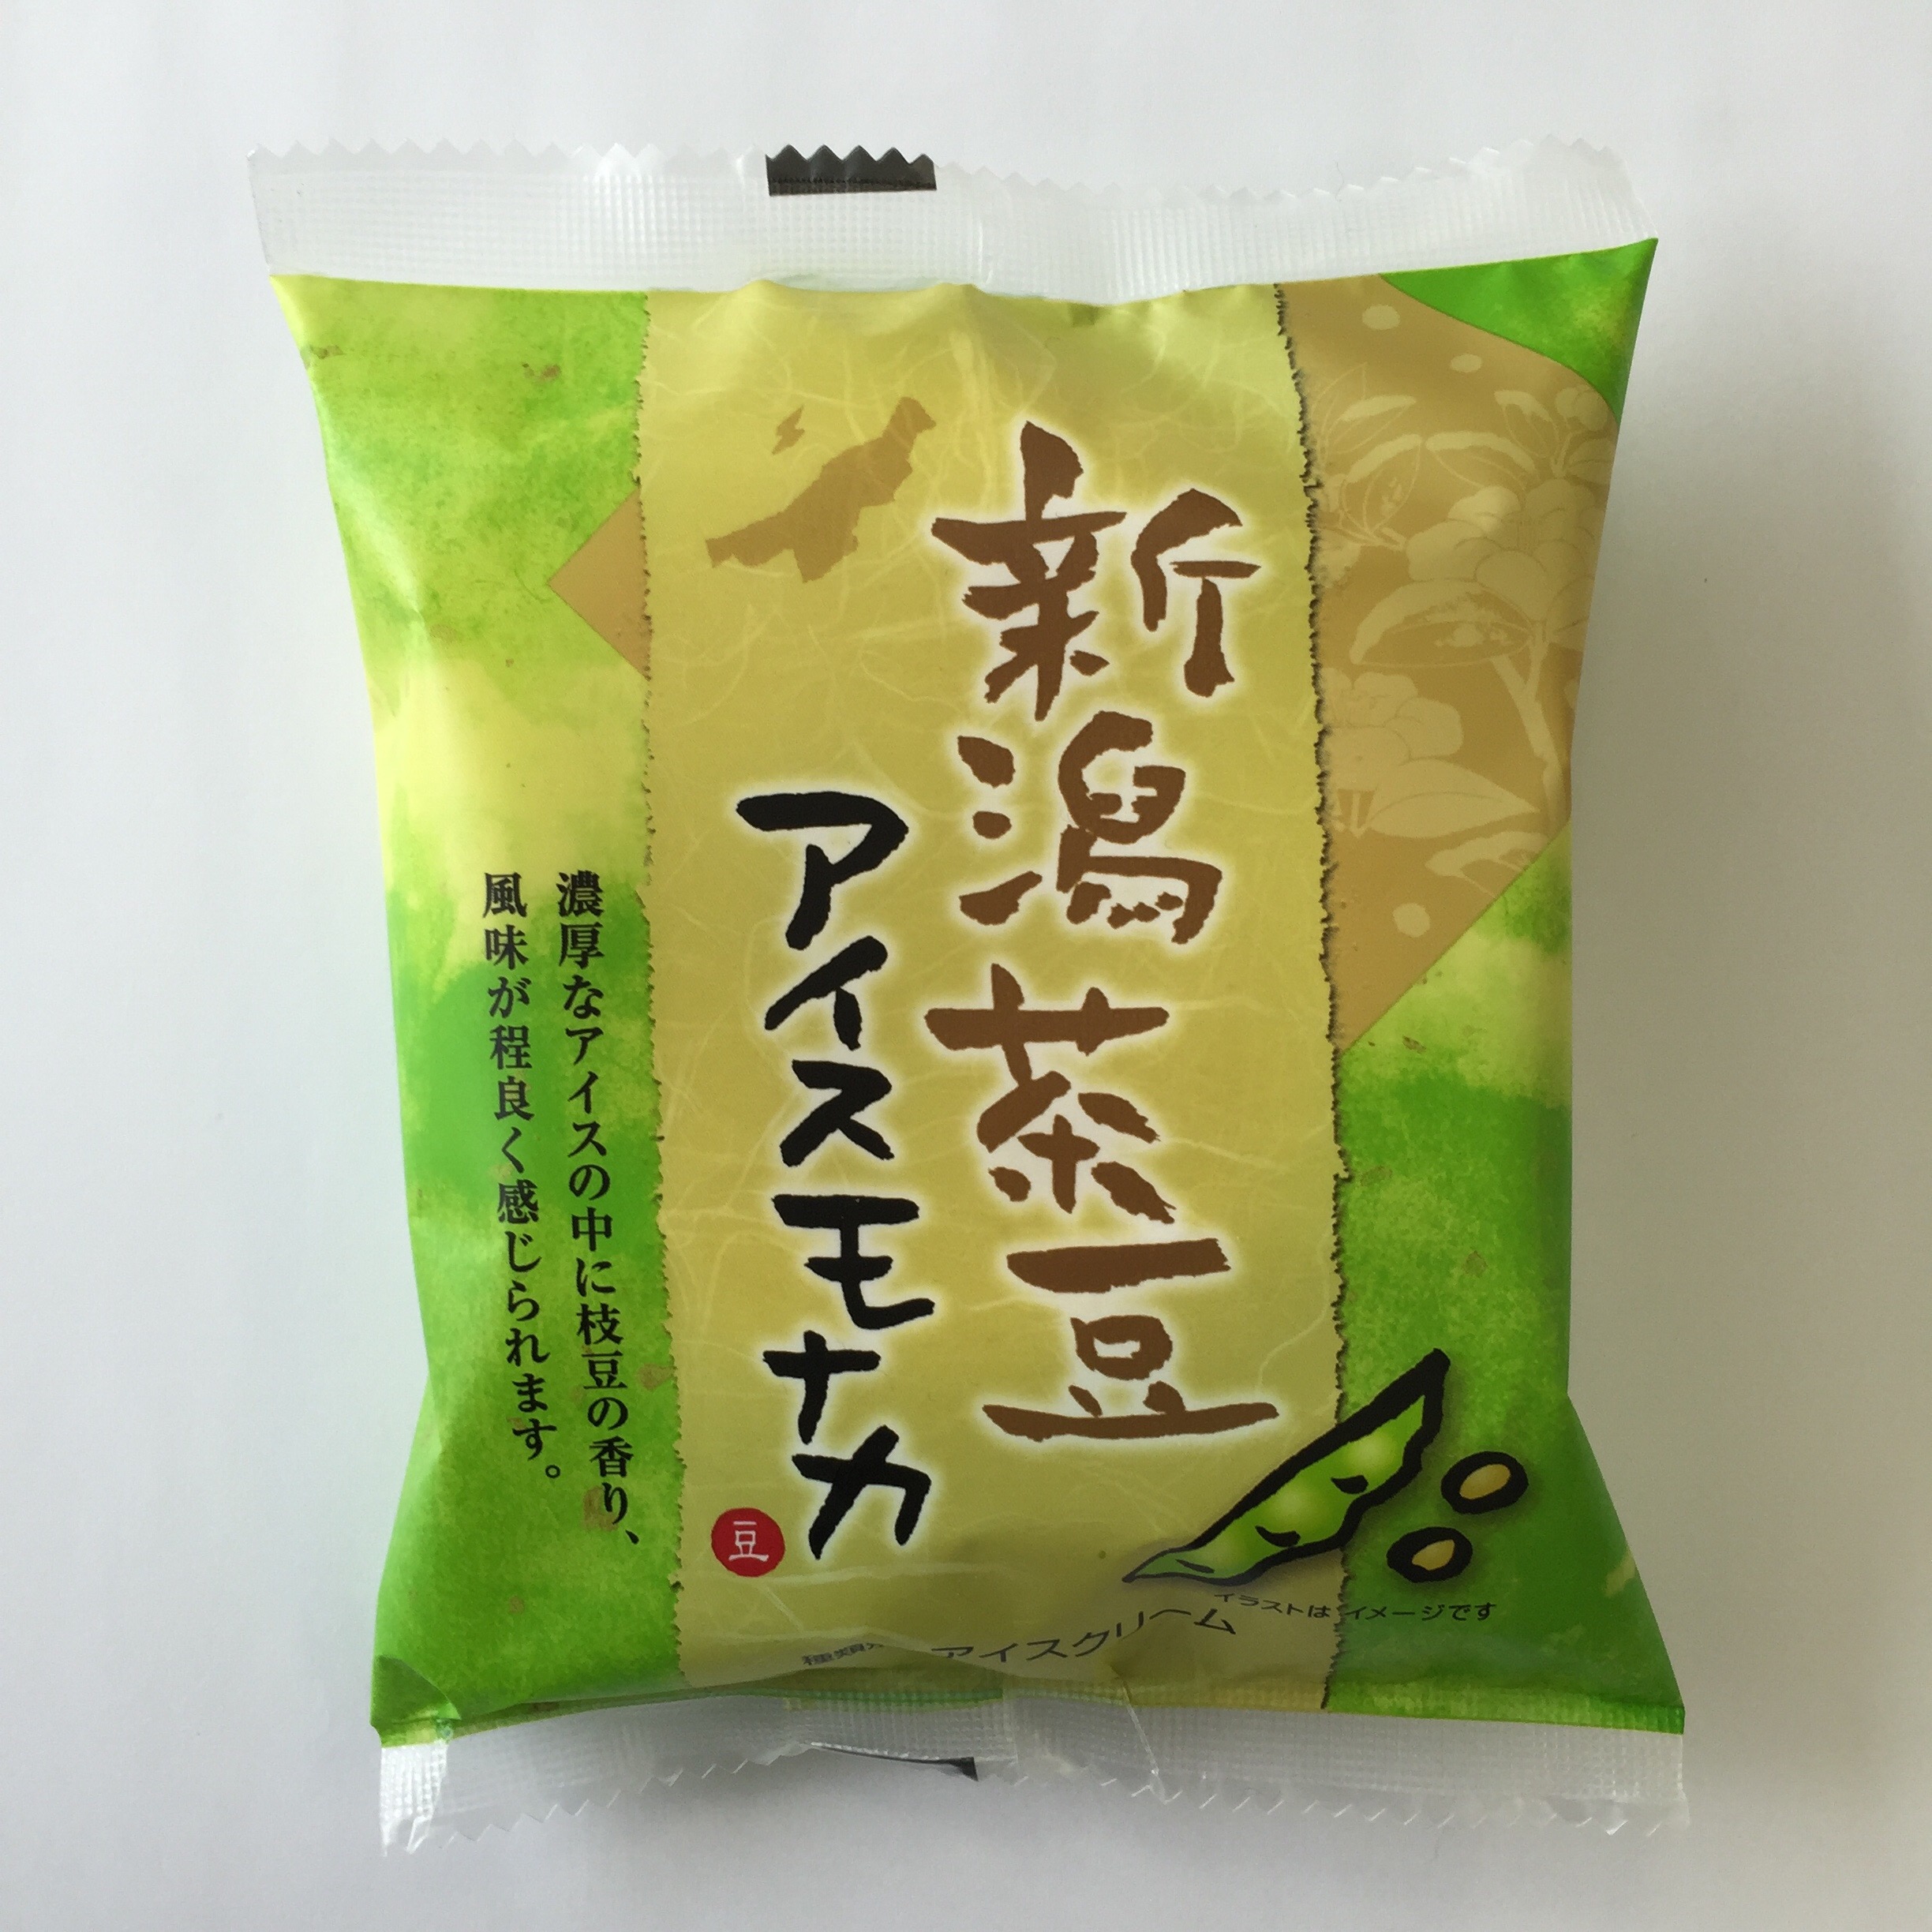 本日は「新潟茶豆アイスモナカ」の製造です